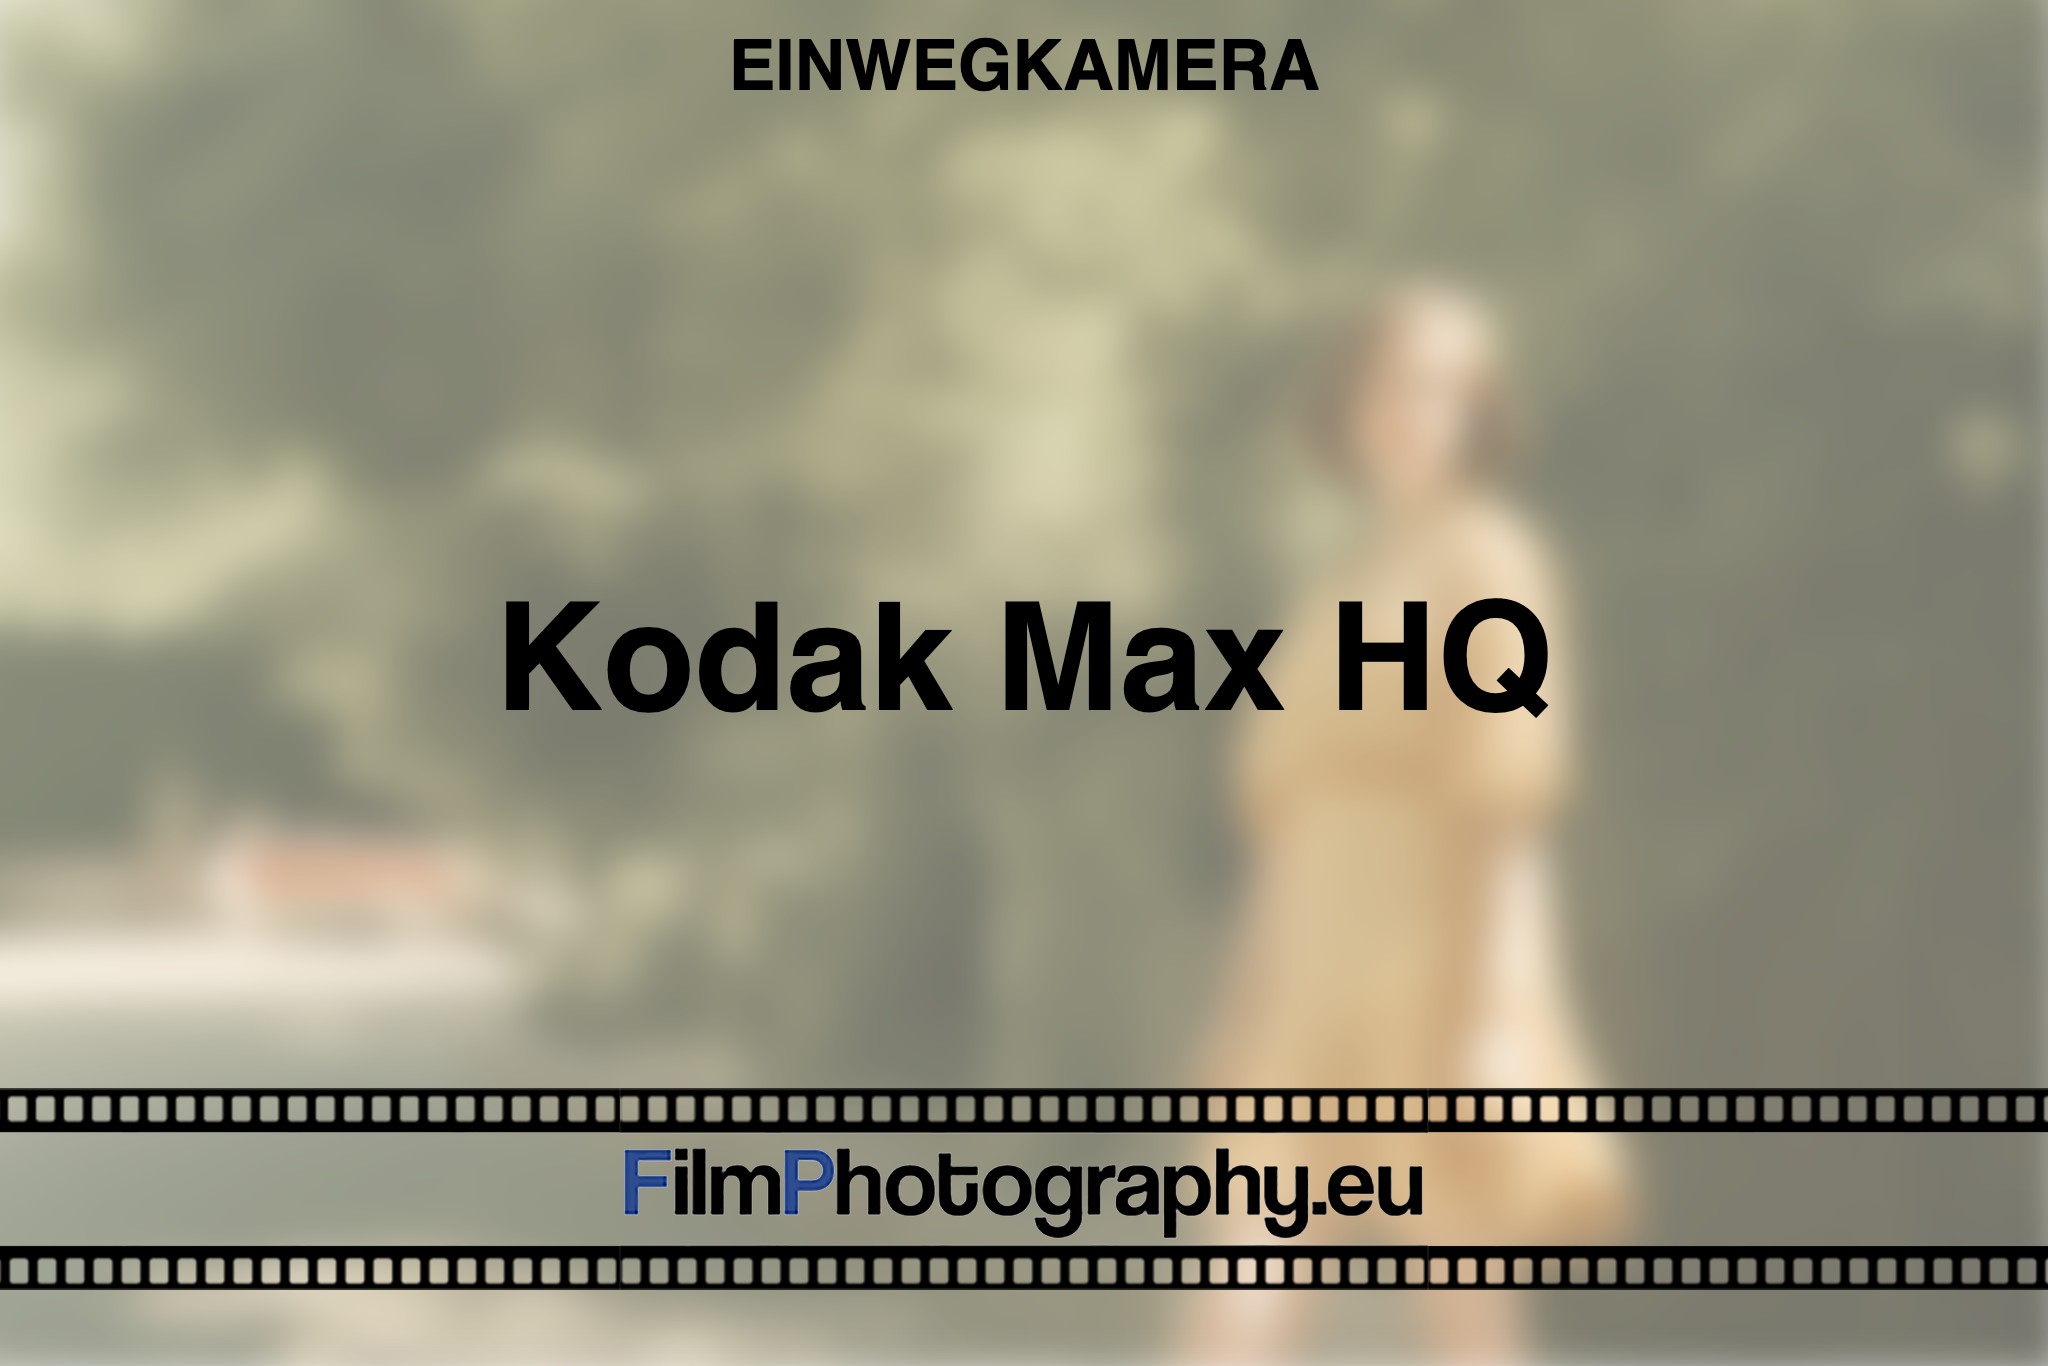 kodak-max-hq-einwegkamera-bnv